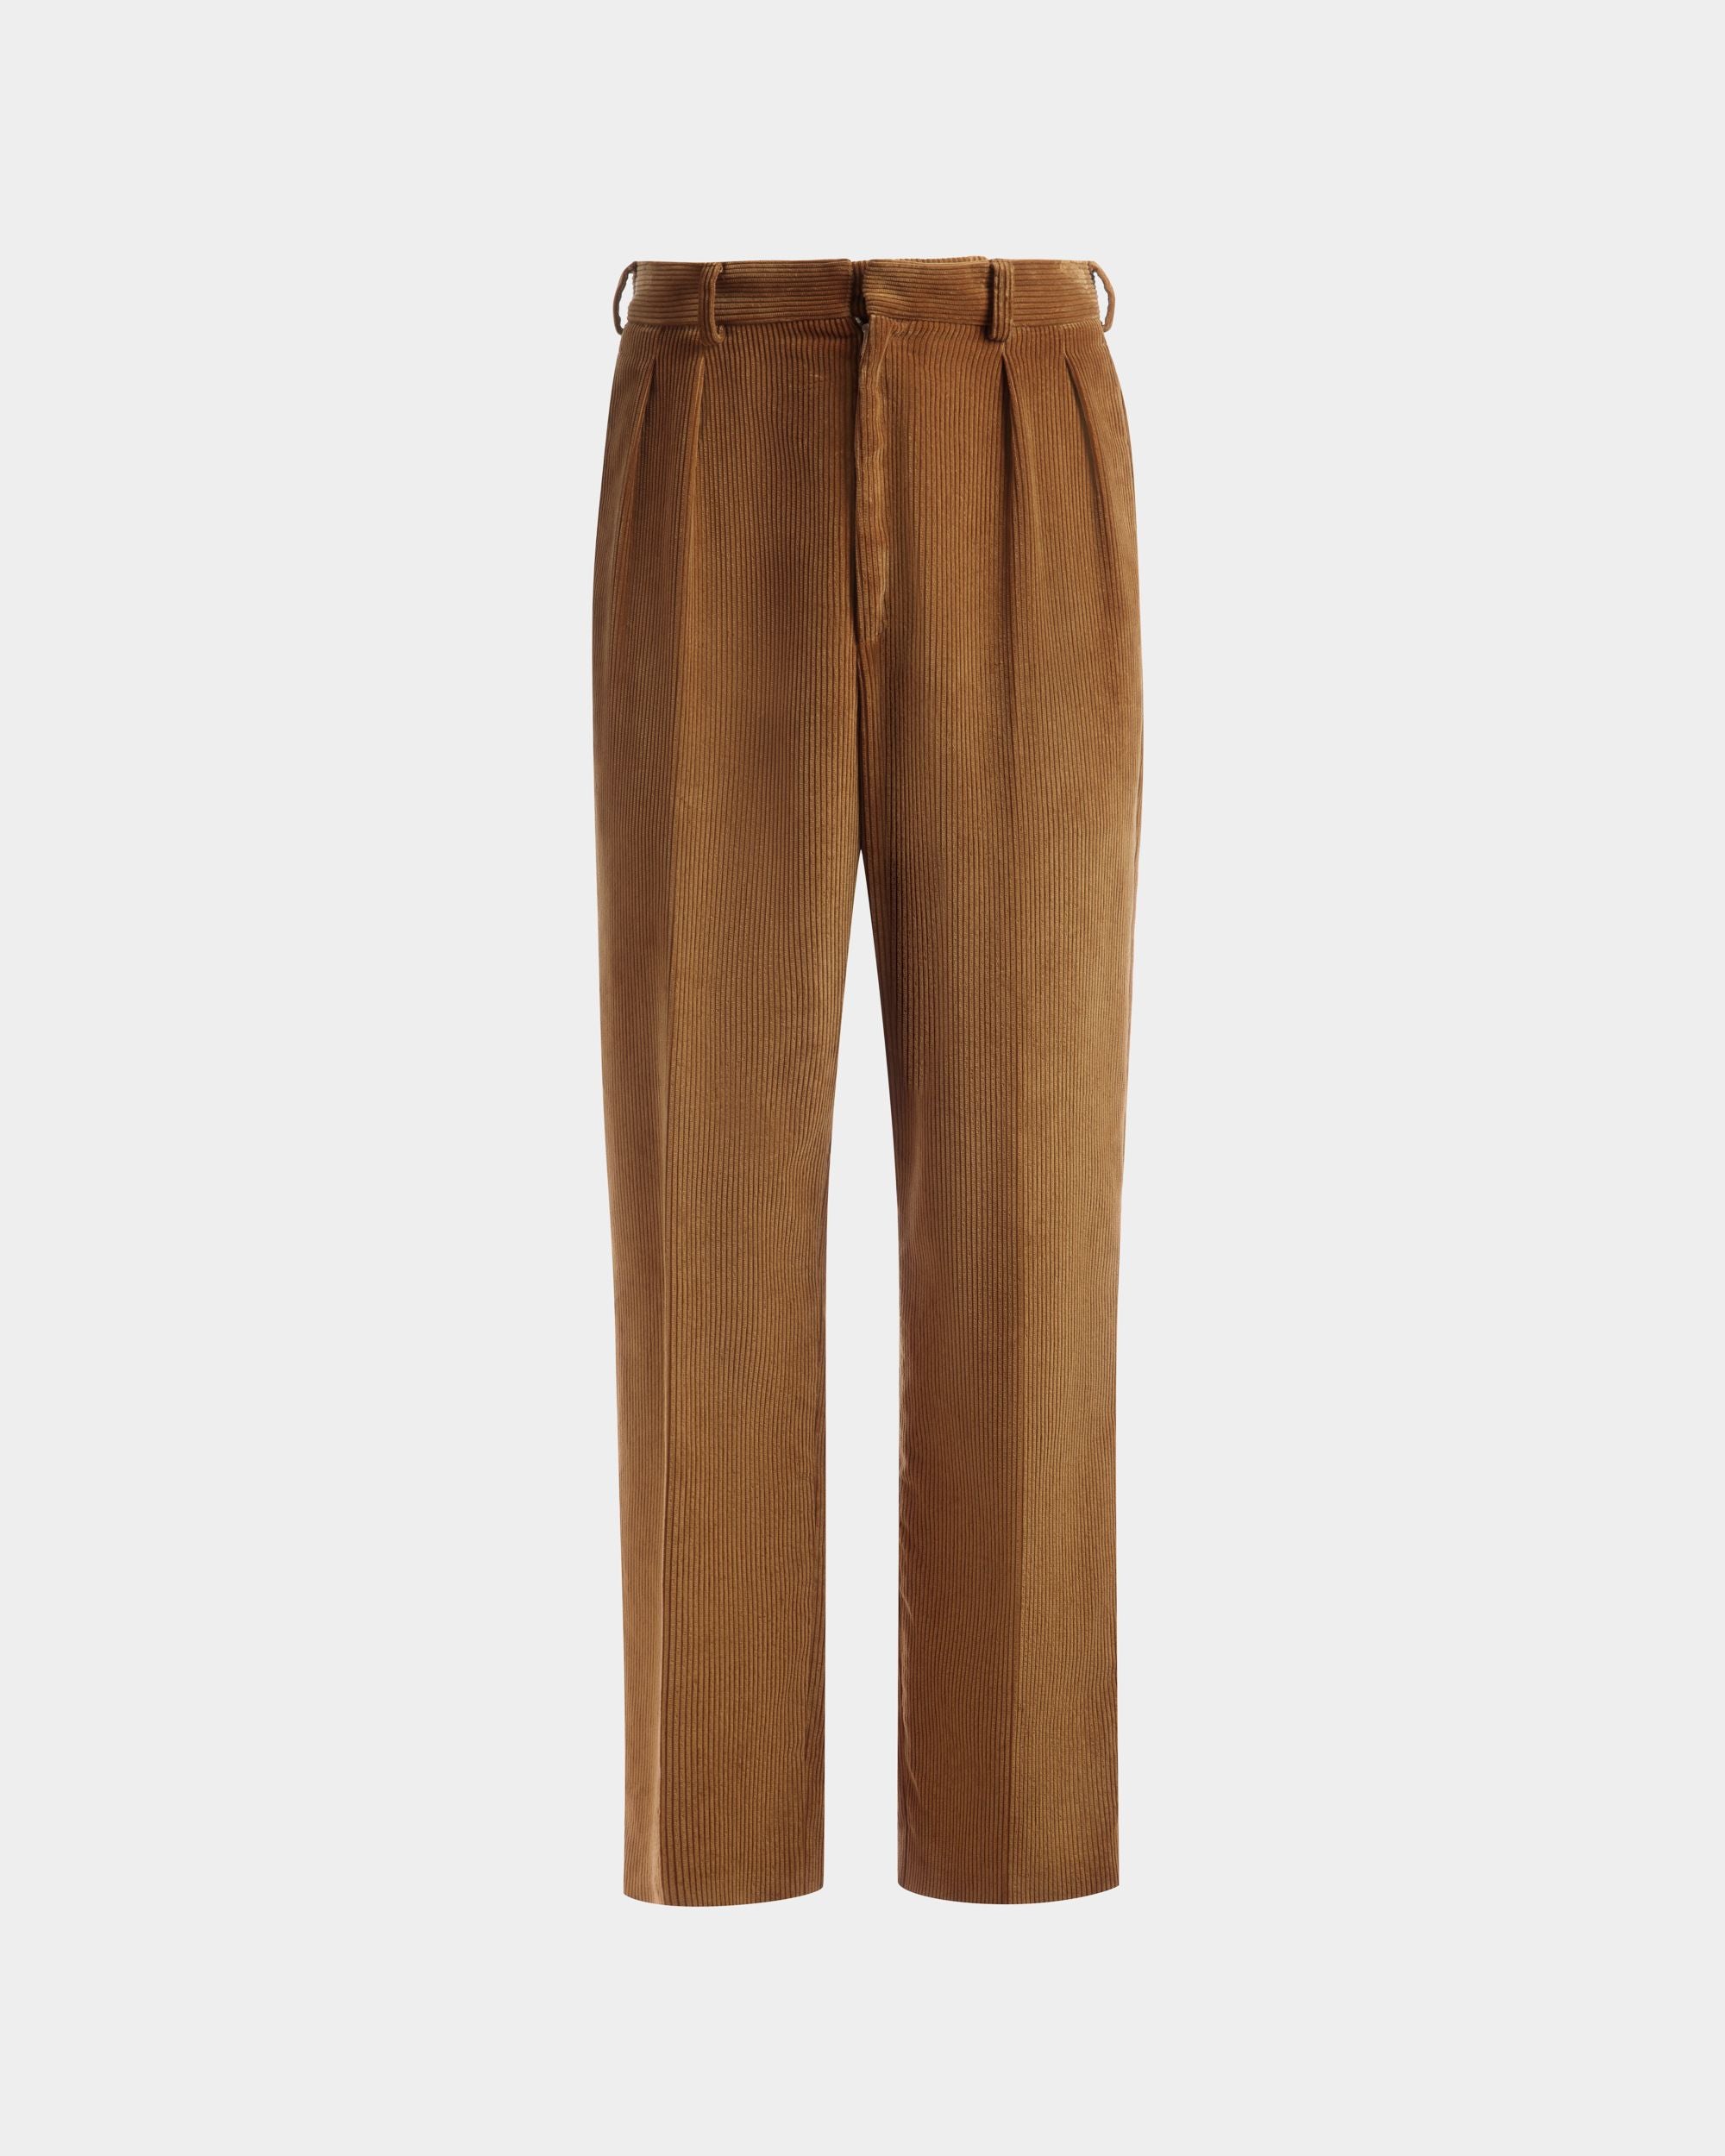 Pantalone dal taglio sartoriale in velluto a coste | Pantalone uomo | Cotone color cammello | Bally | Still Life Fronte